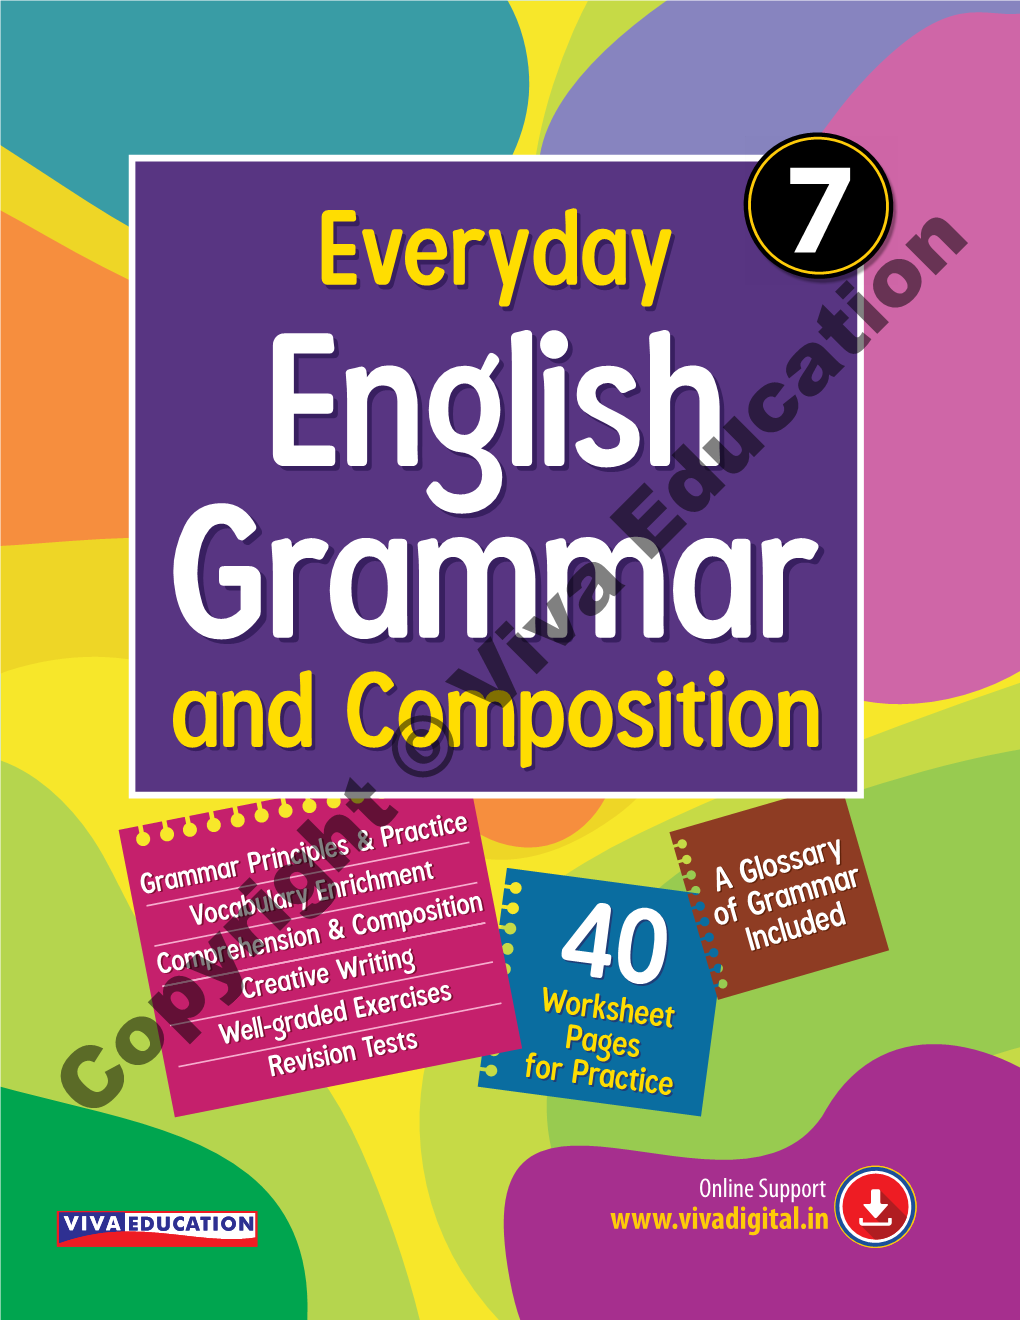 Everyday English Grammar 7.Indd